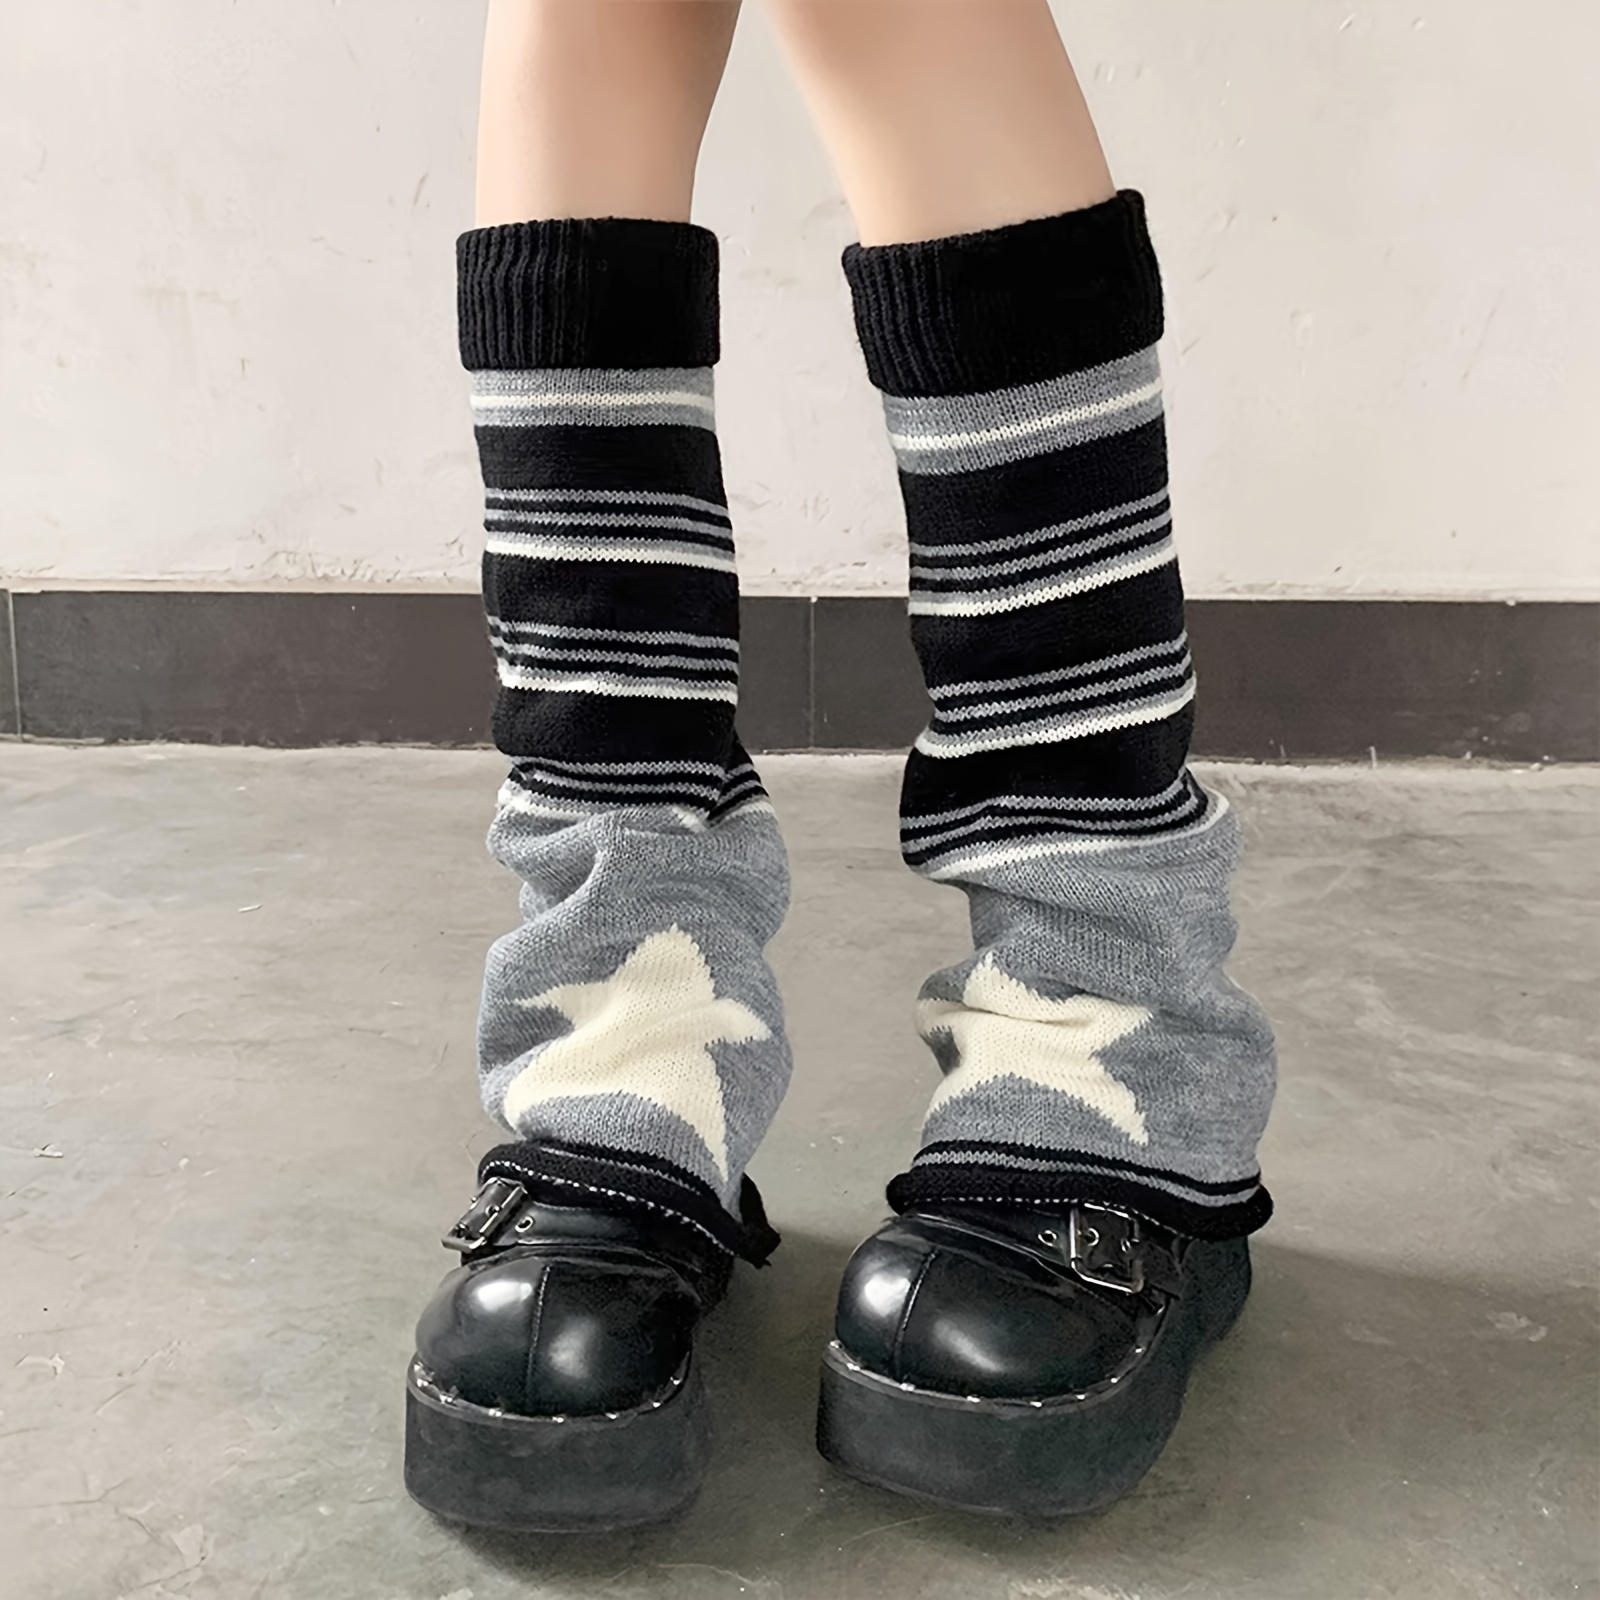 Star Print Striped Leg Warmers, JK Style Knee High Flared Leg Warmer Socks,  Women's Stockings & Hosiery